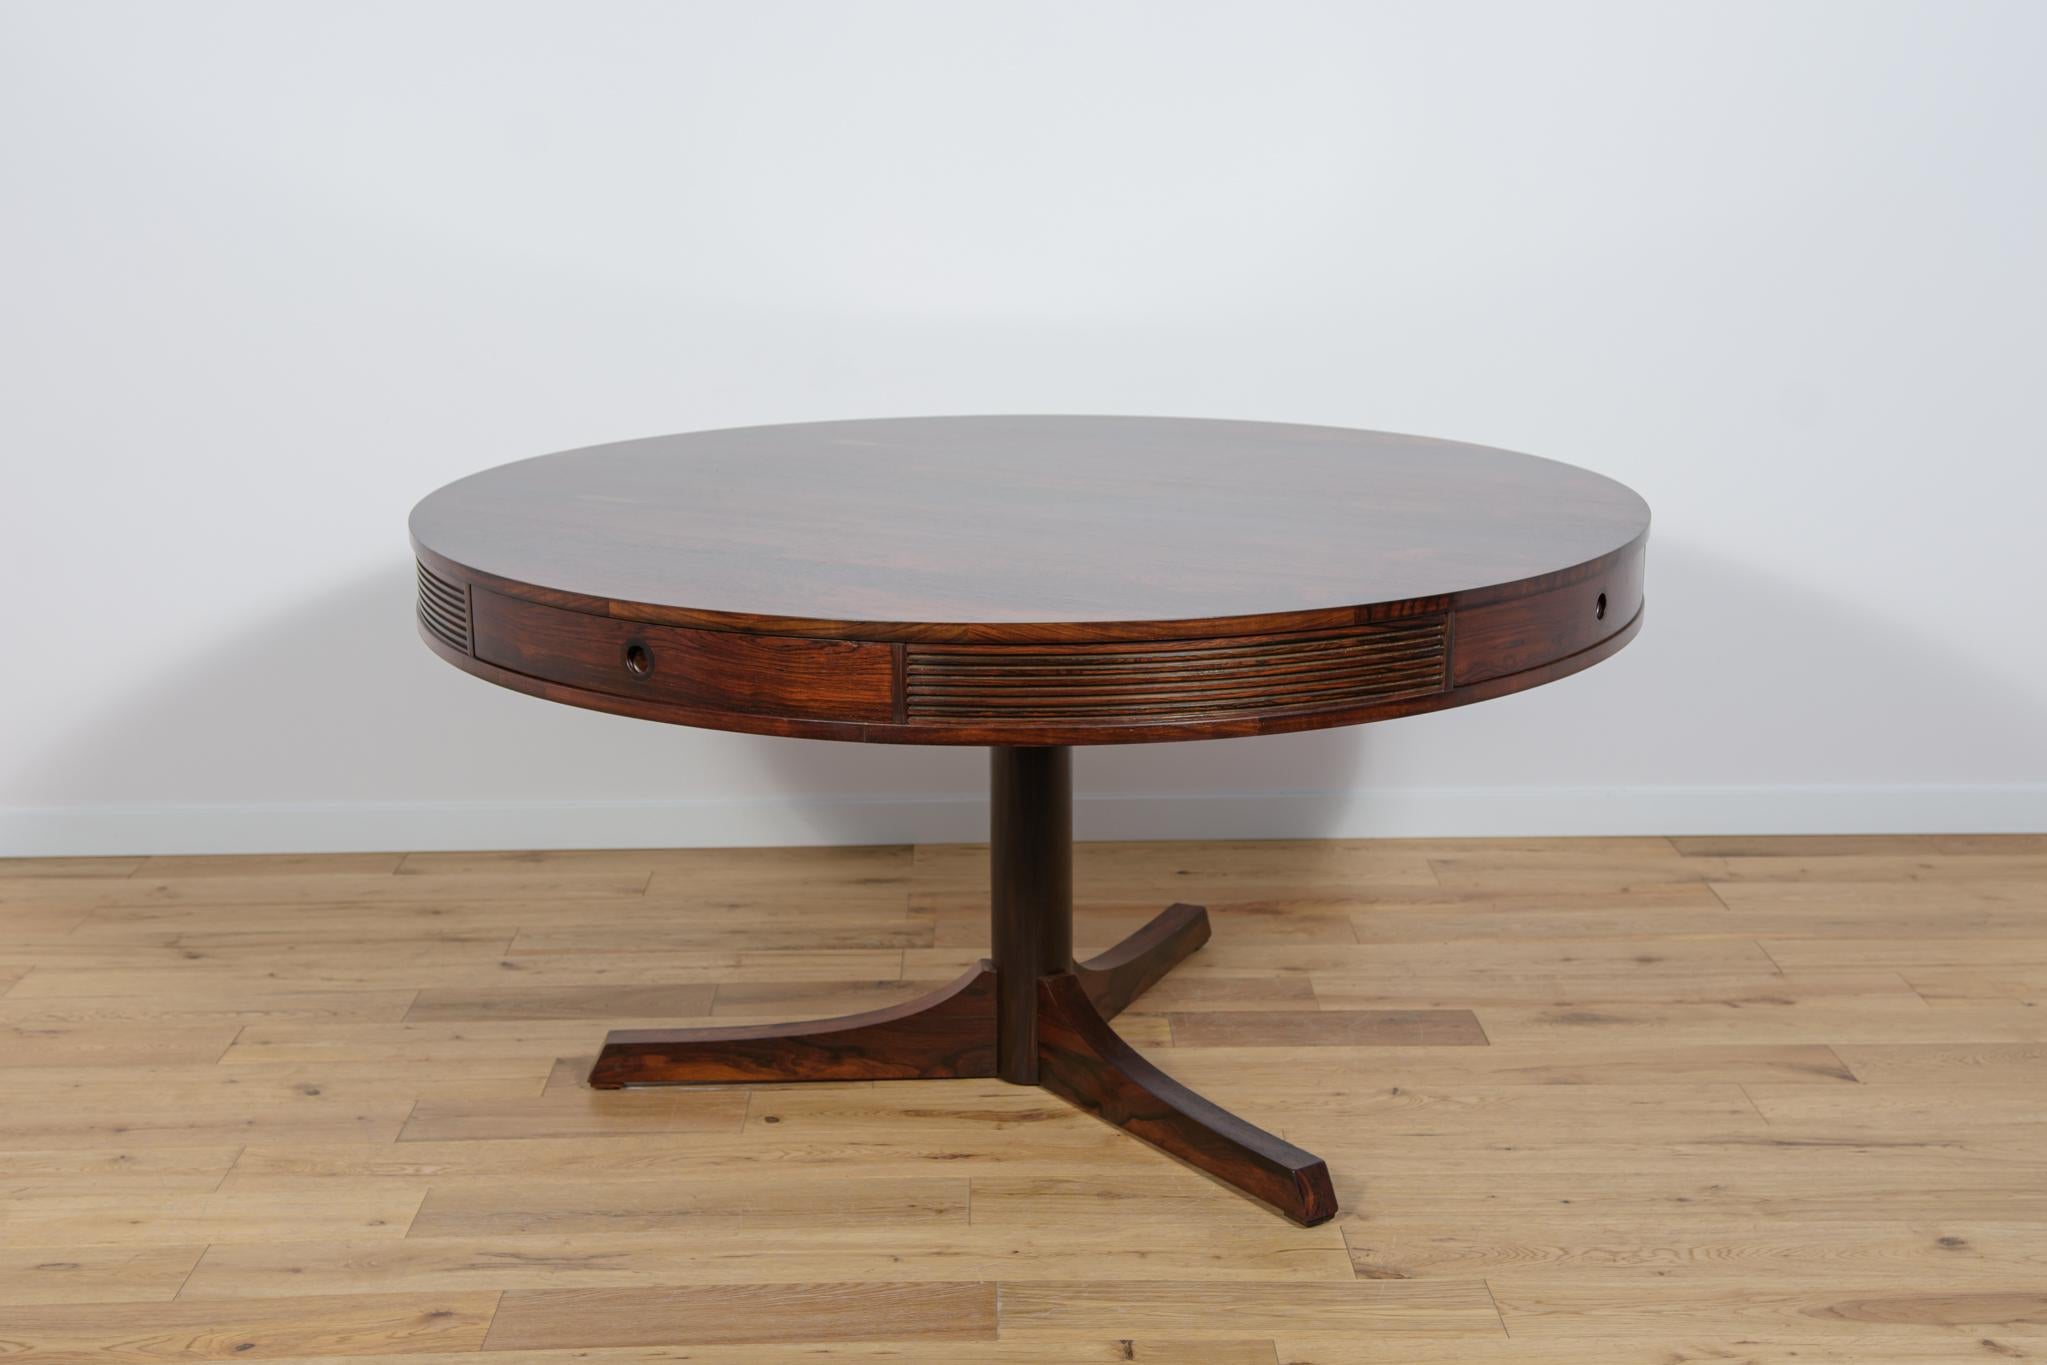 Der Esstisch wurde 1957 von Robert Heritage entworfen und in den späten 1950er Jahren von Archie Shine hergestellt. Der Tisch gehörte zur luxuriösen Bridgeford-Möbelserie, die in dieser Zeit in den englischen Heal's-Läden verkauft wurde. Die Kante